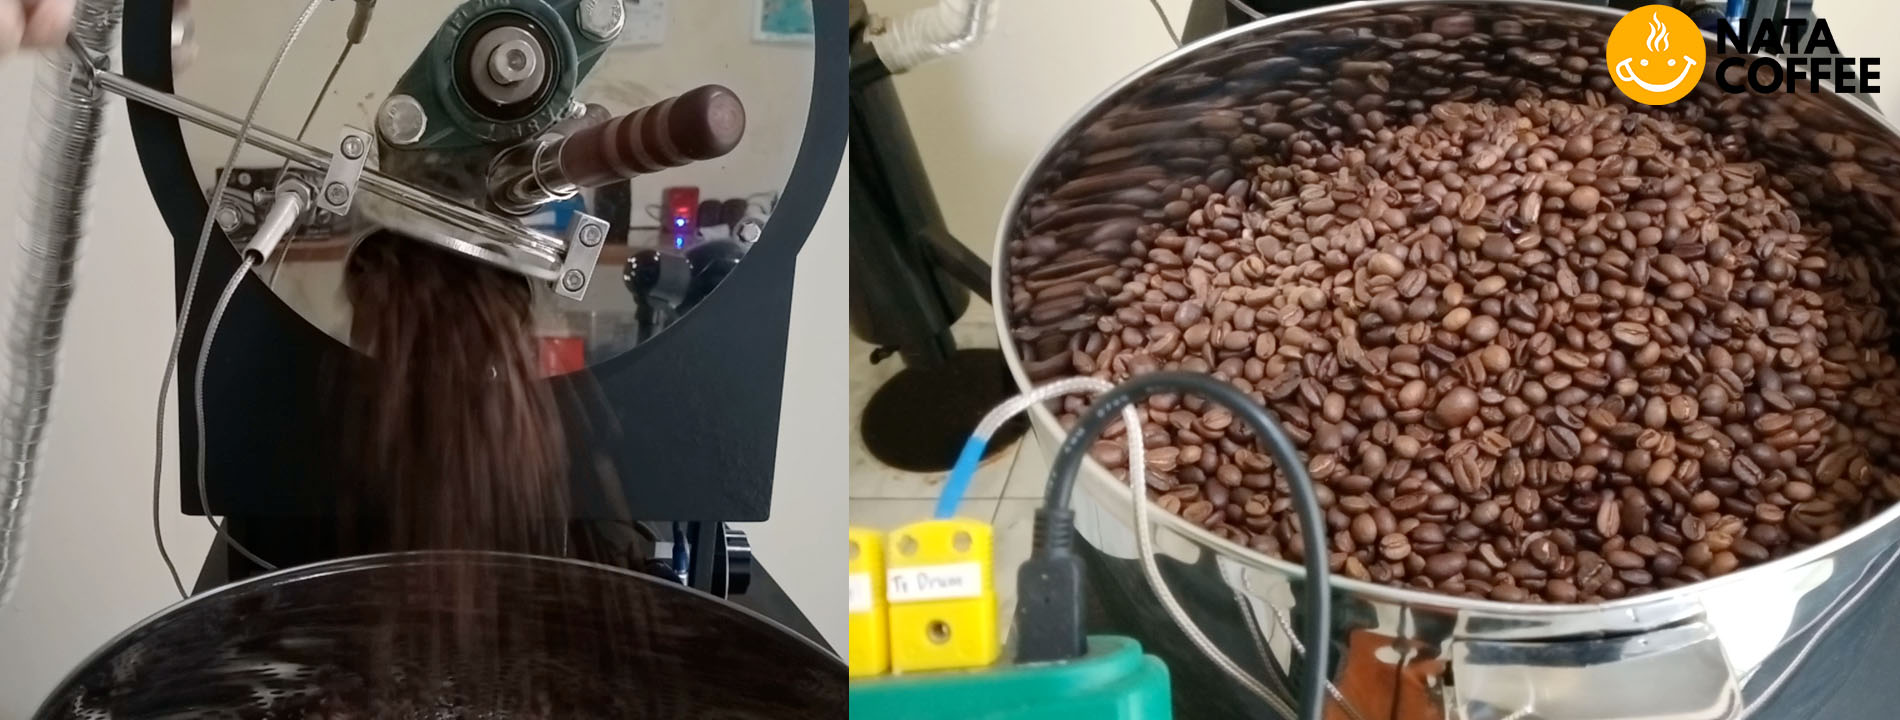 Proses roasting kopi (Sumber: dok. pribadi)